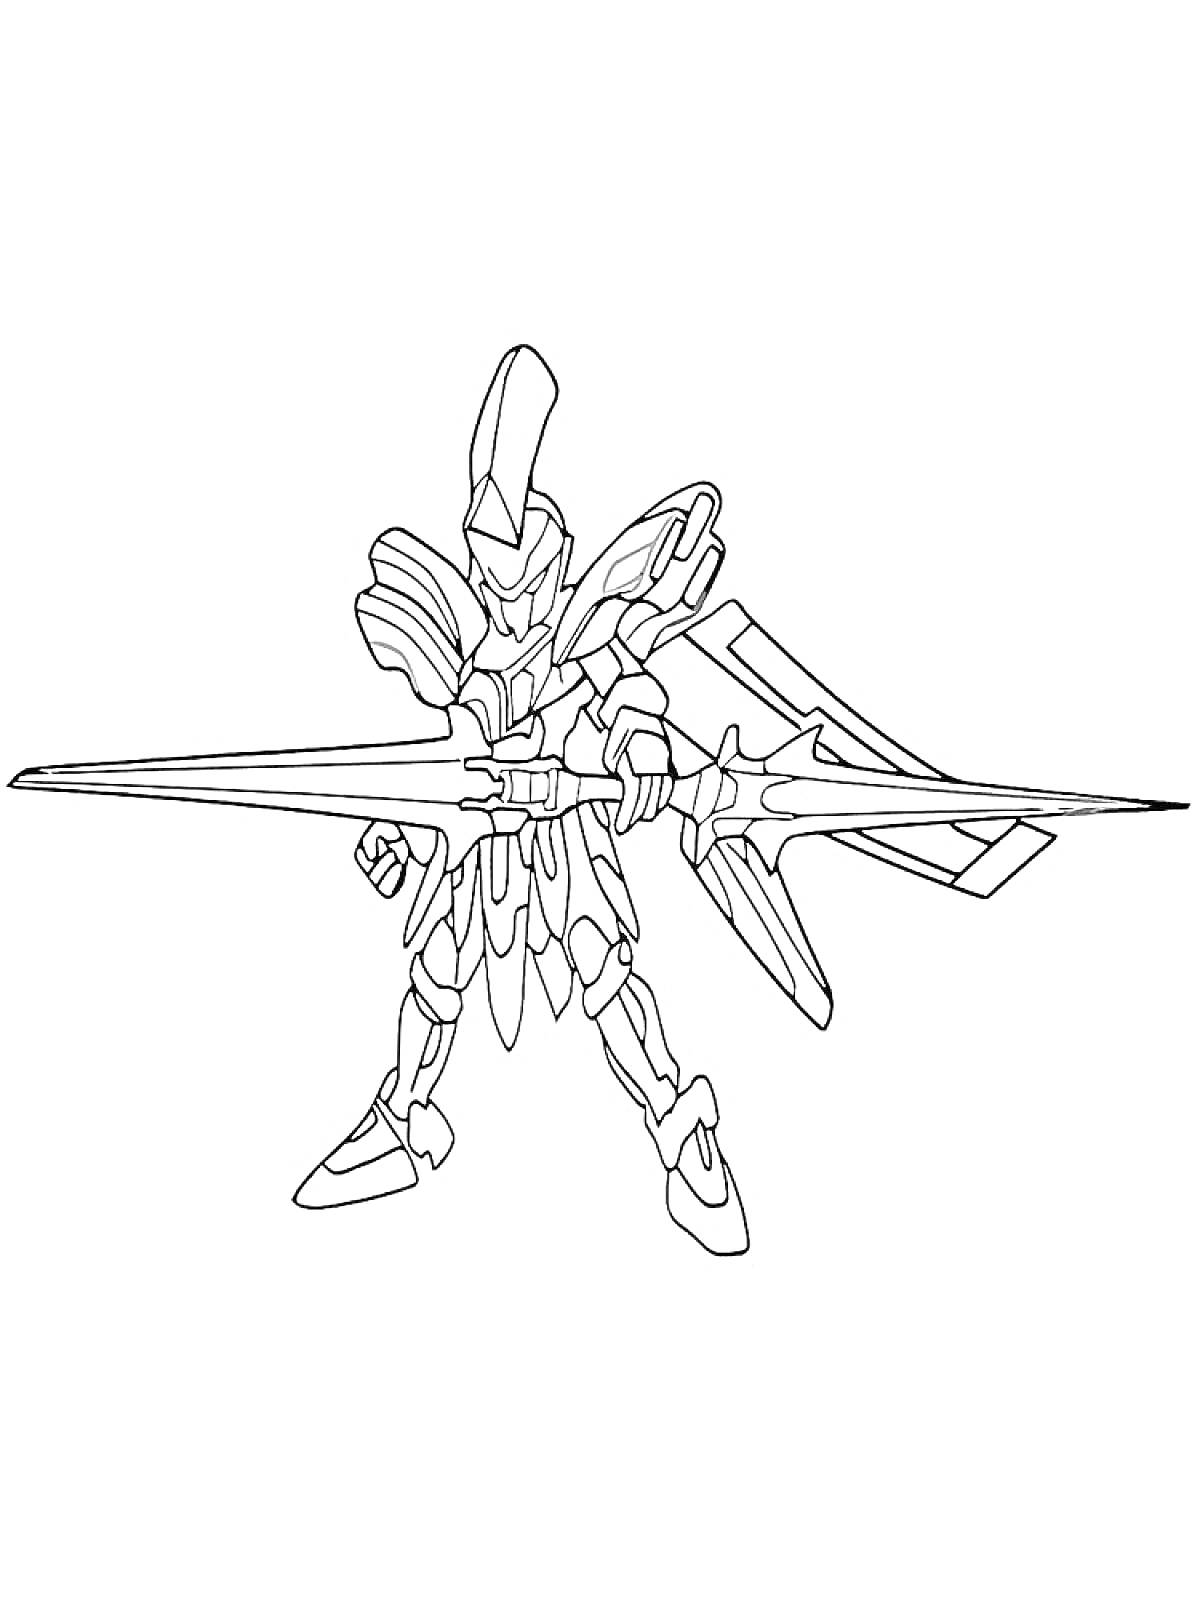 Раскраска Боевой робот LBX с мечом и крыльями